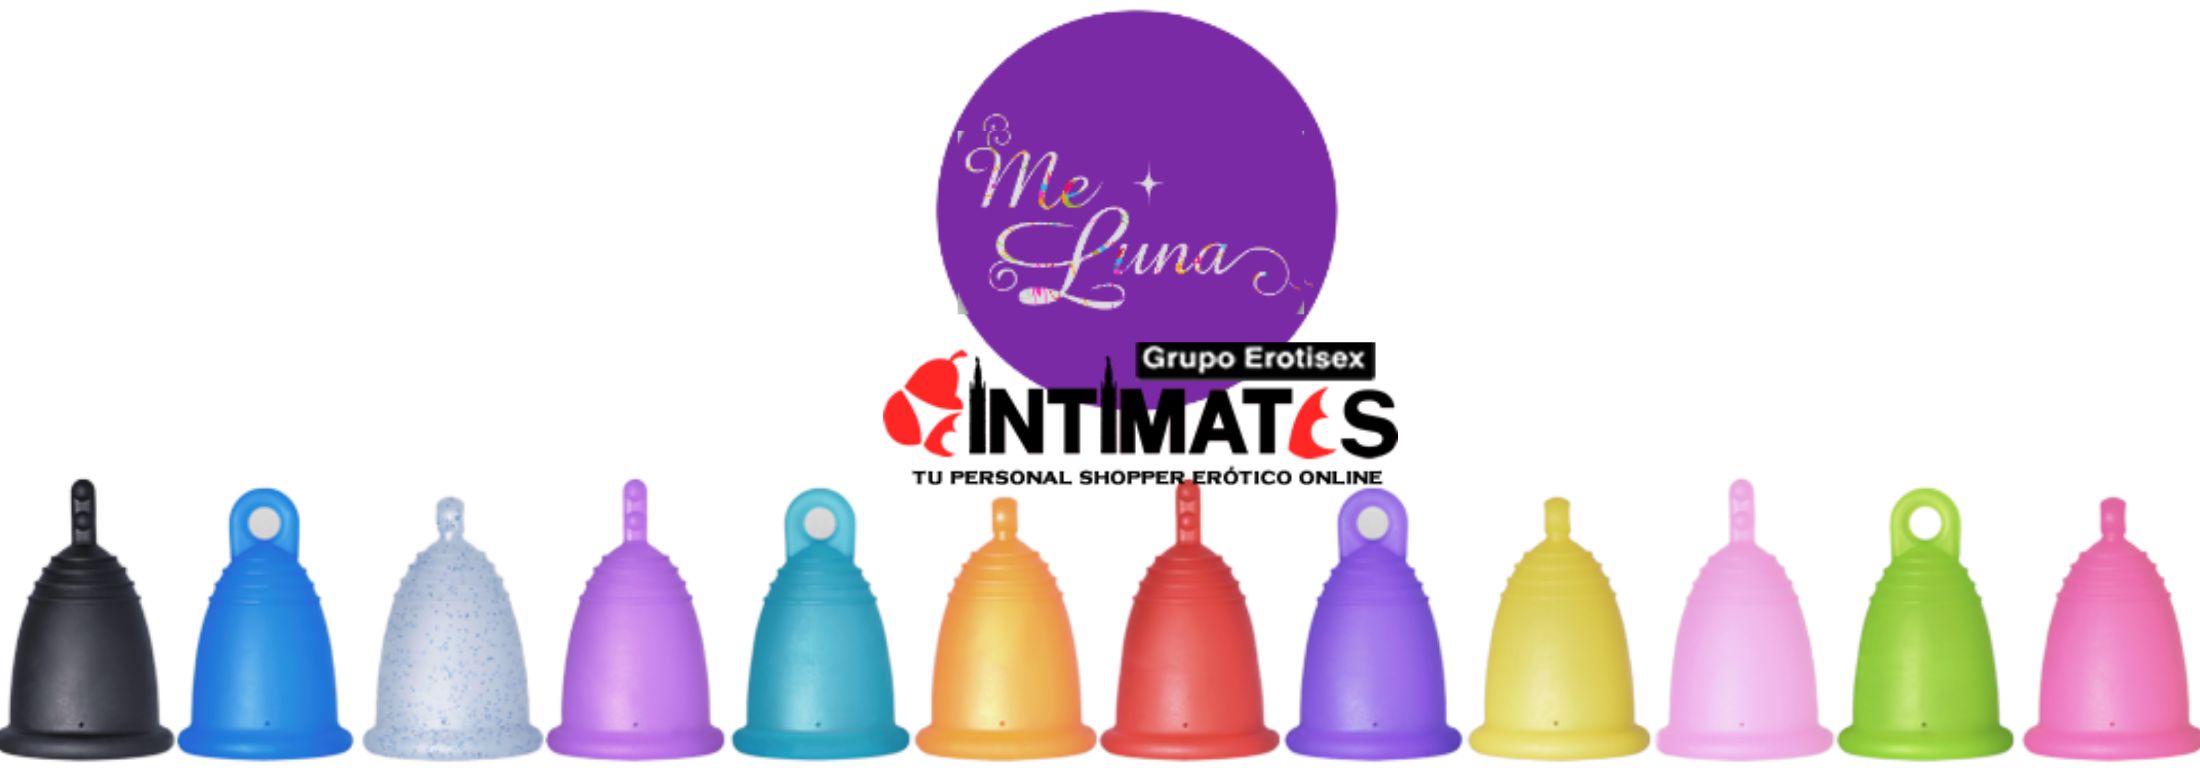 Copas Menstruales de MeLuna, que puedes adquirir en intimates.es "Tu Personal Shopper Erótico Online"